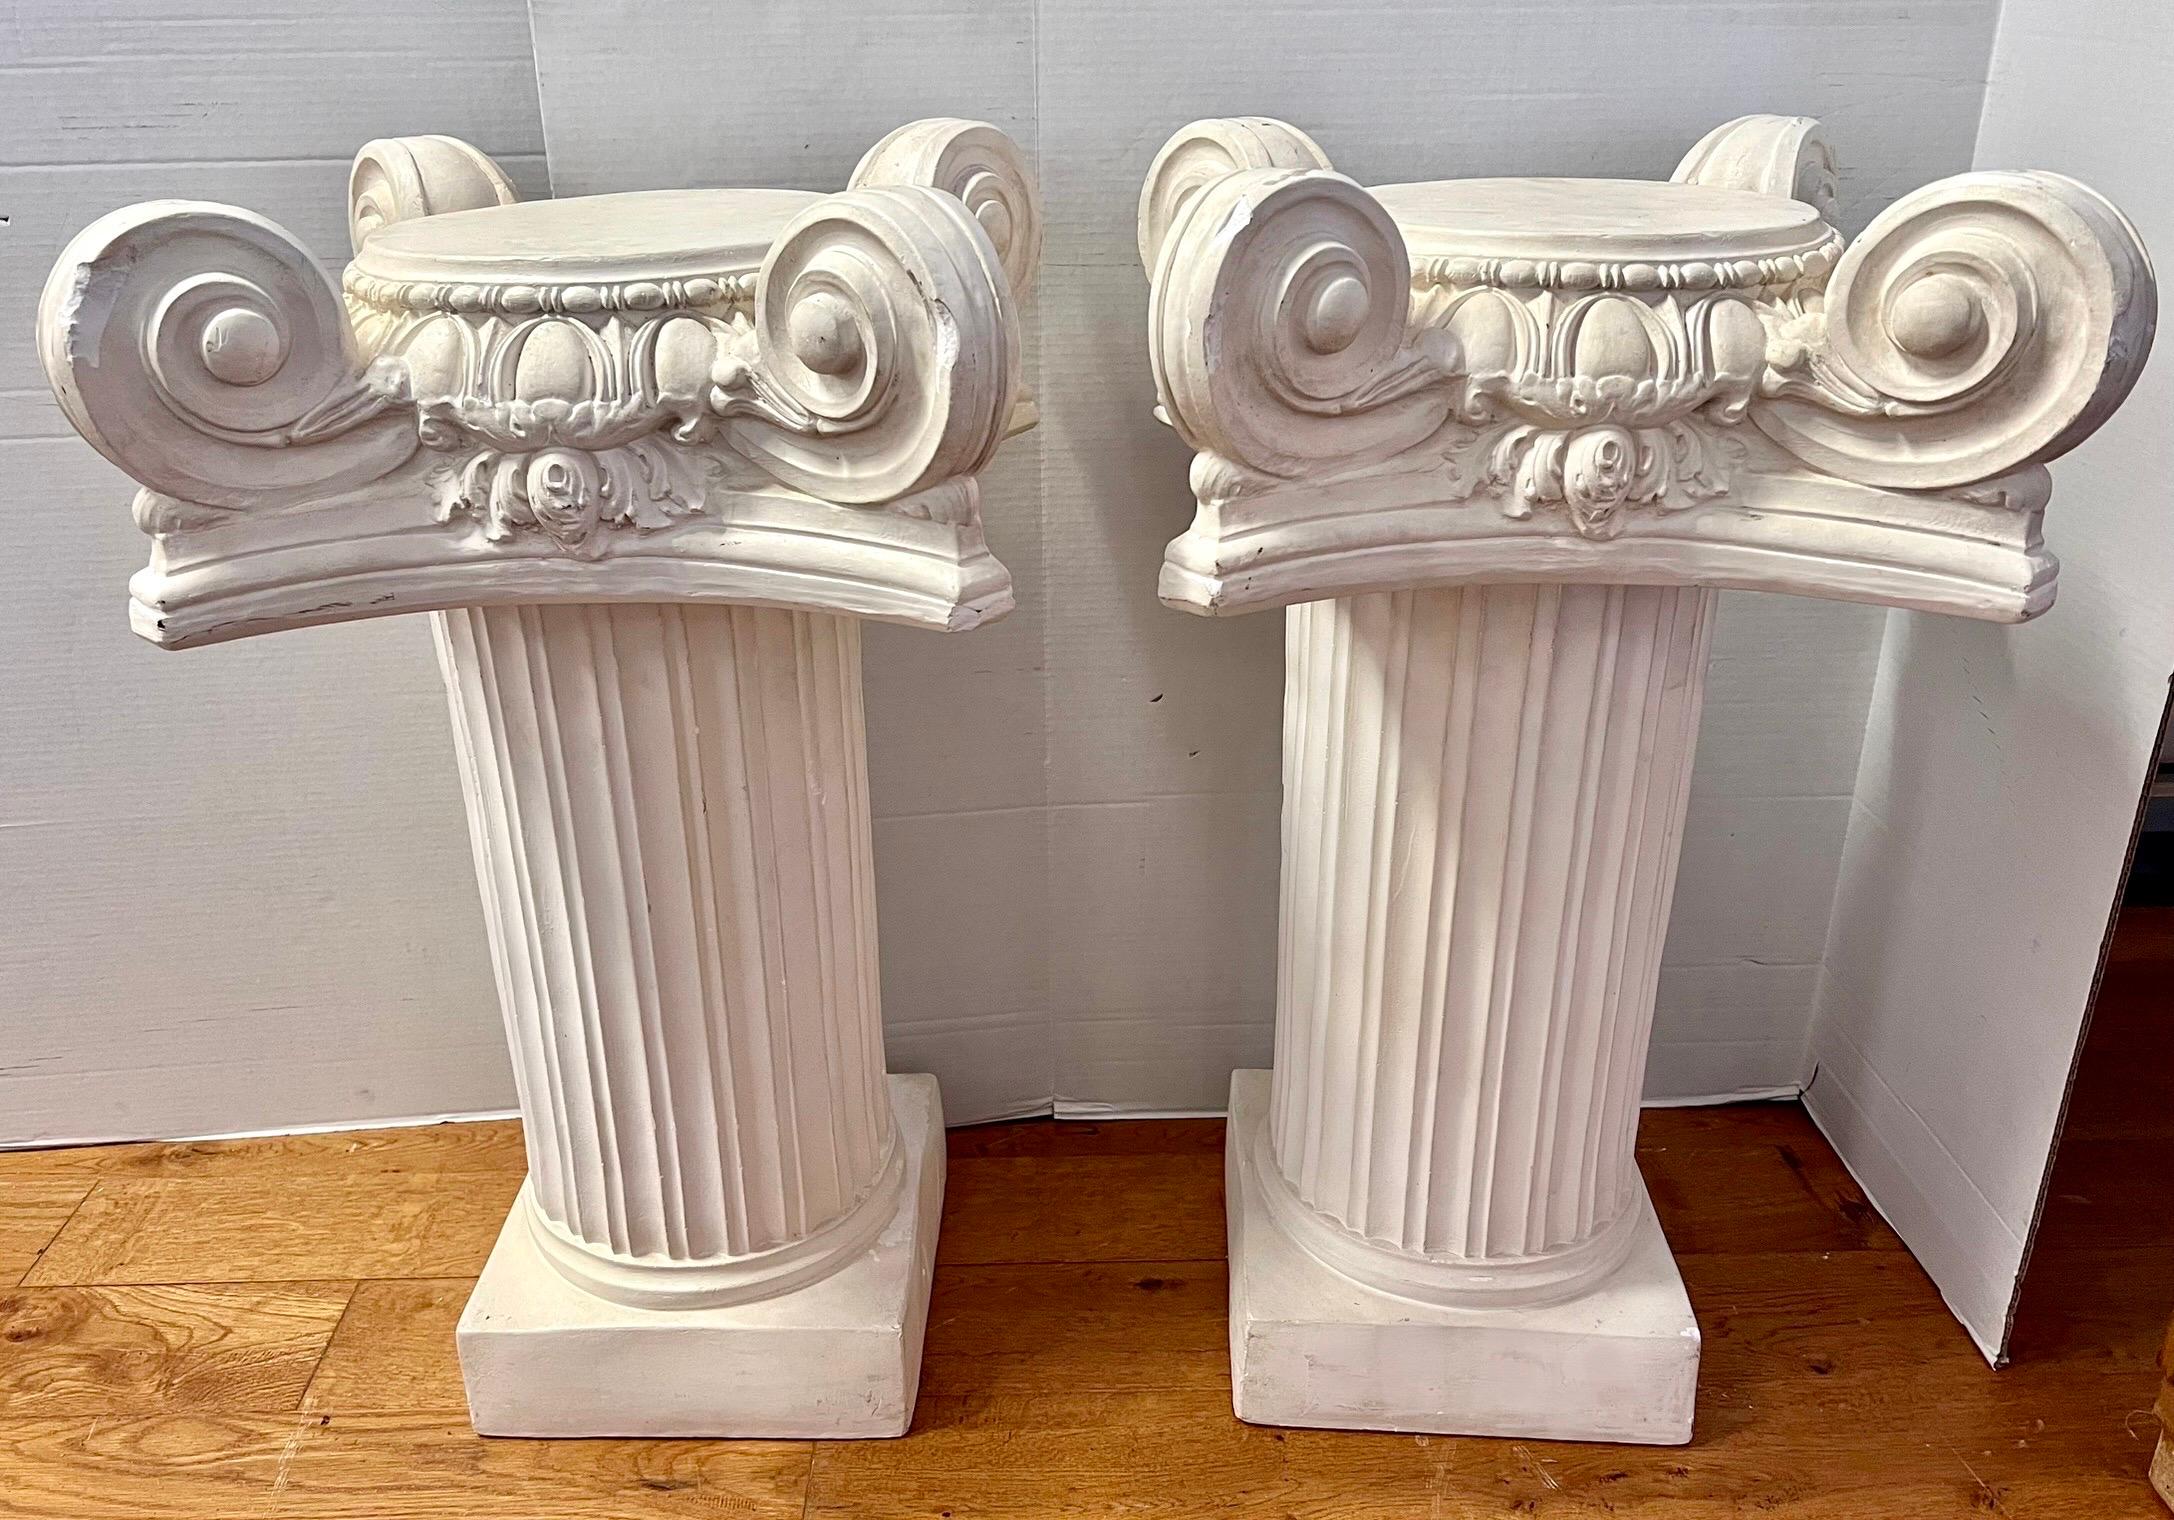 Zwei große ikonische Säulen oder Beistelltische aus Gips  vielseitig einsetzbar.  Jeder besteht aus zwei Teilen, wobei der obere Teil der Säule abnehmbar ist, um die Bewegung zu erleichtern.